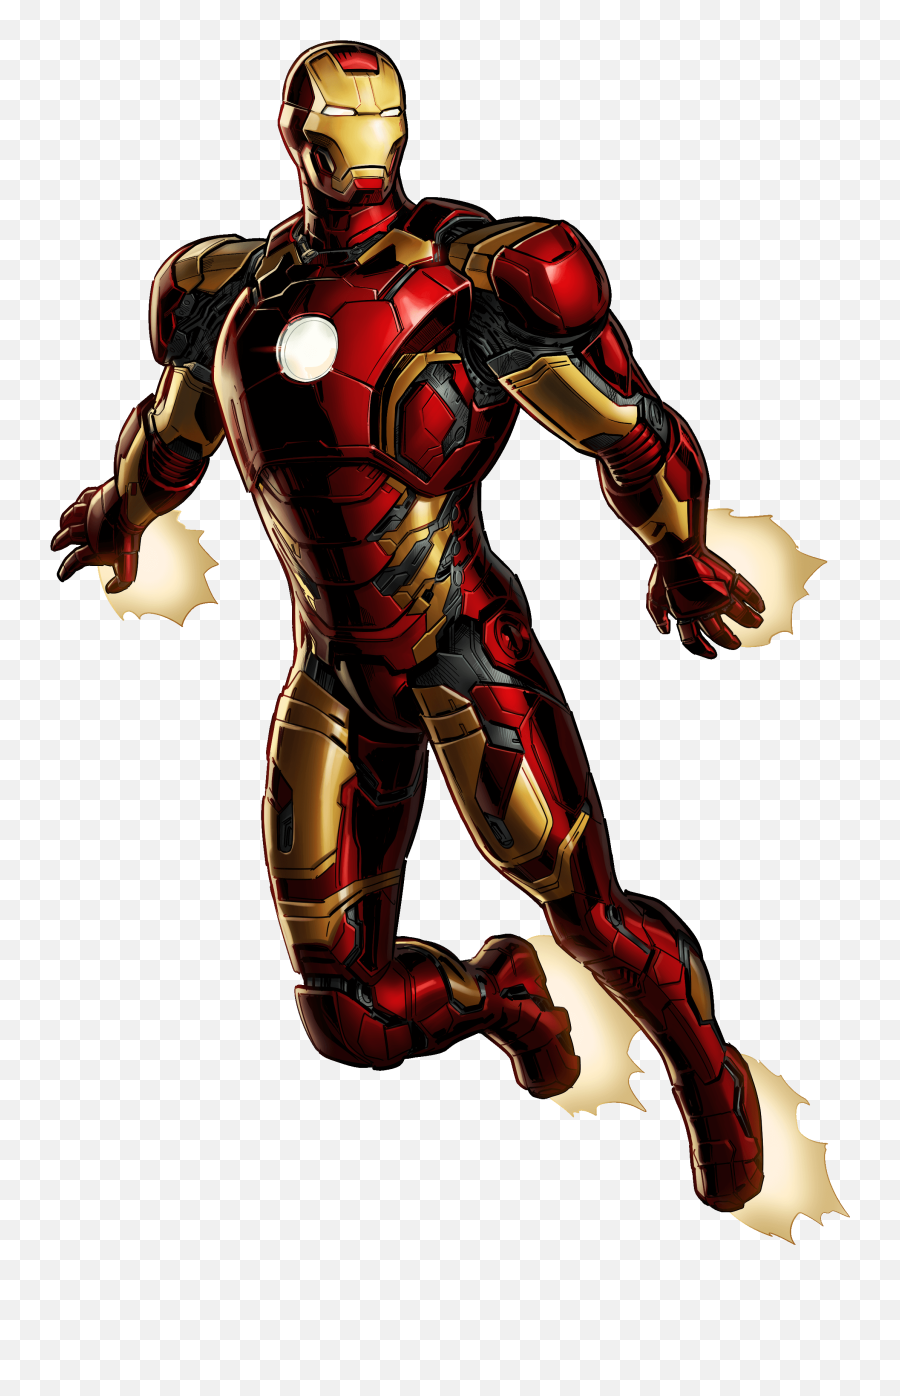 Ironman Png 91 - Transparent Iron Man Png,Iron Man Png